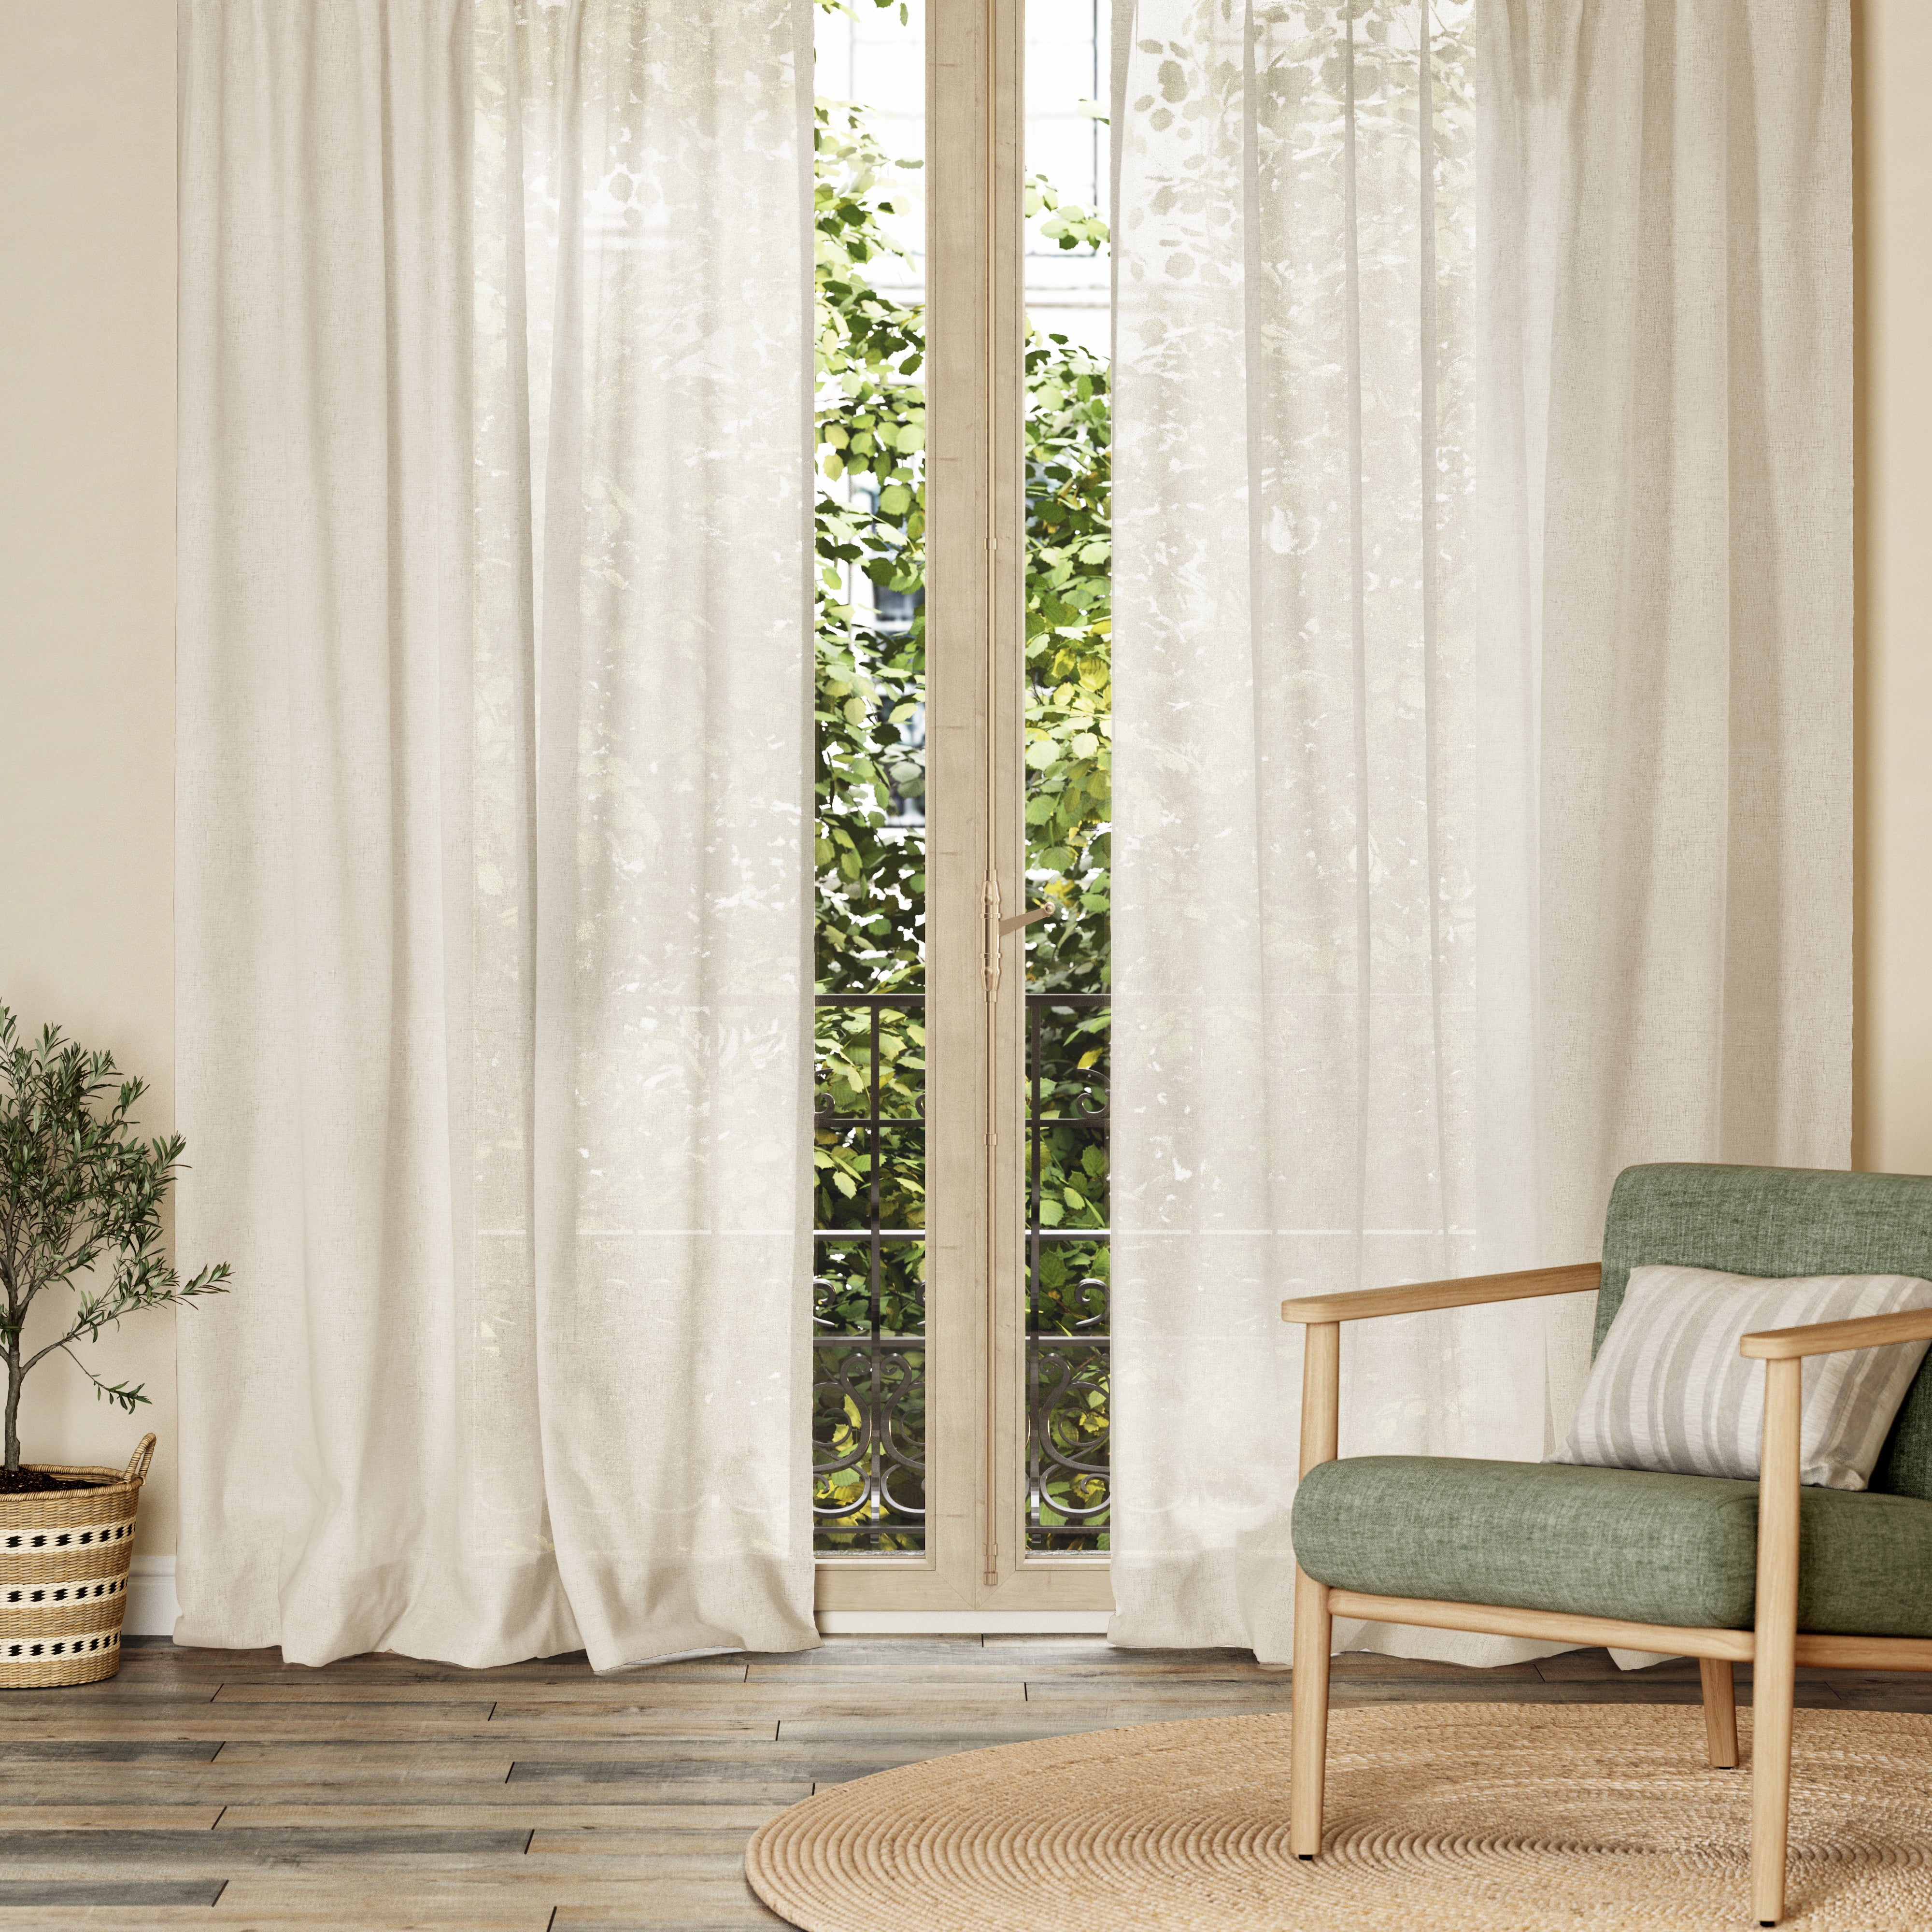 Barra cortina madera INSPIRE roble natural 150 cm D28 mm